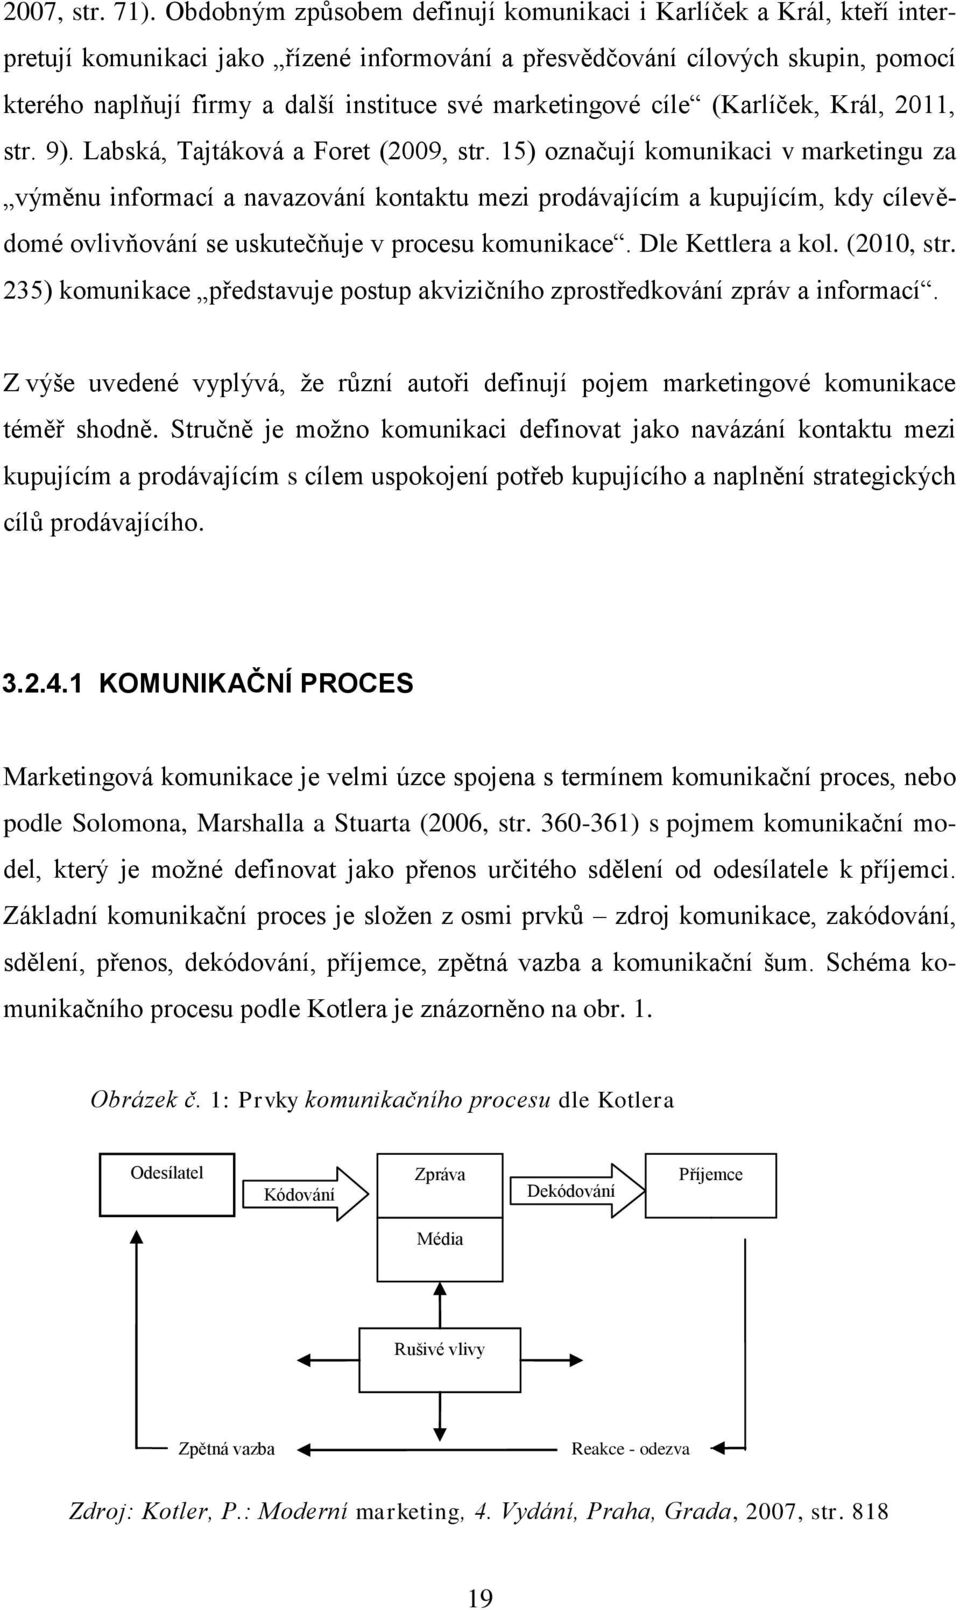 marketingové cíle (Karlíček, Král, 2011, str. 9). Labská, Tajtáková a Foret (2009, str.